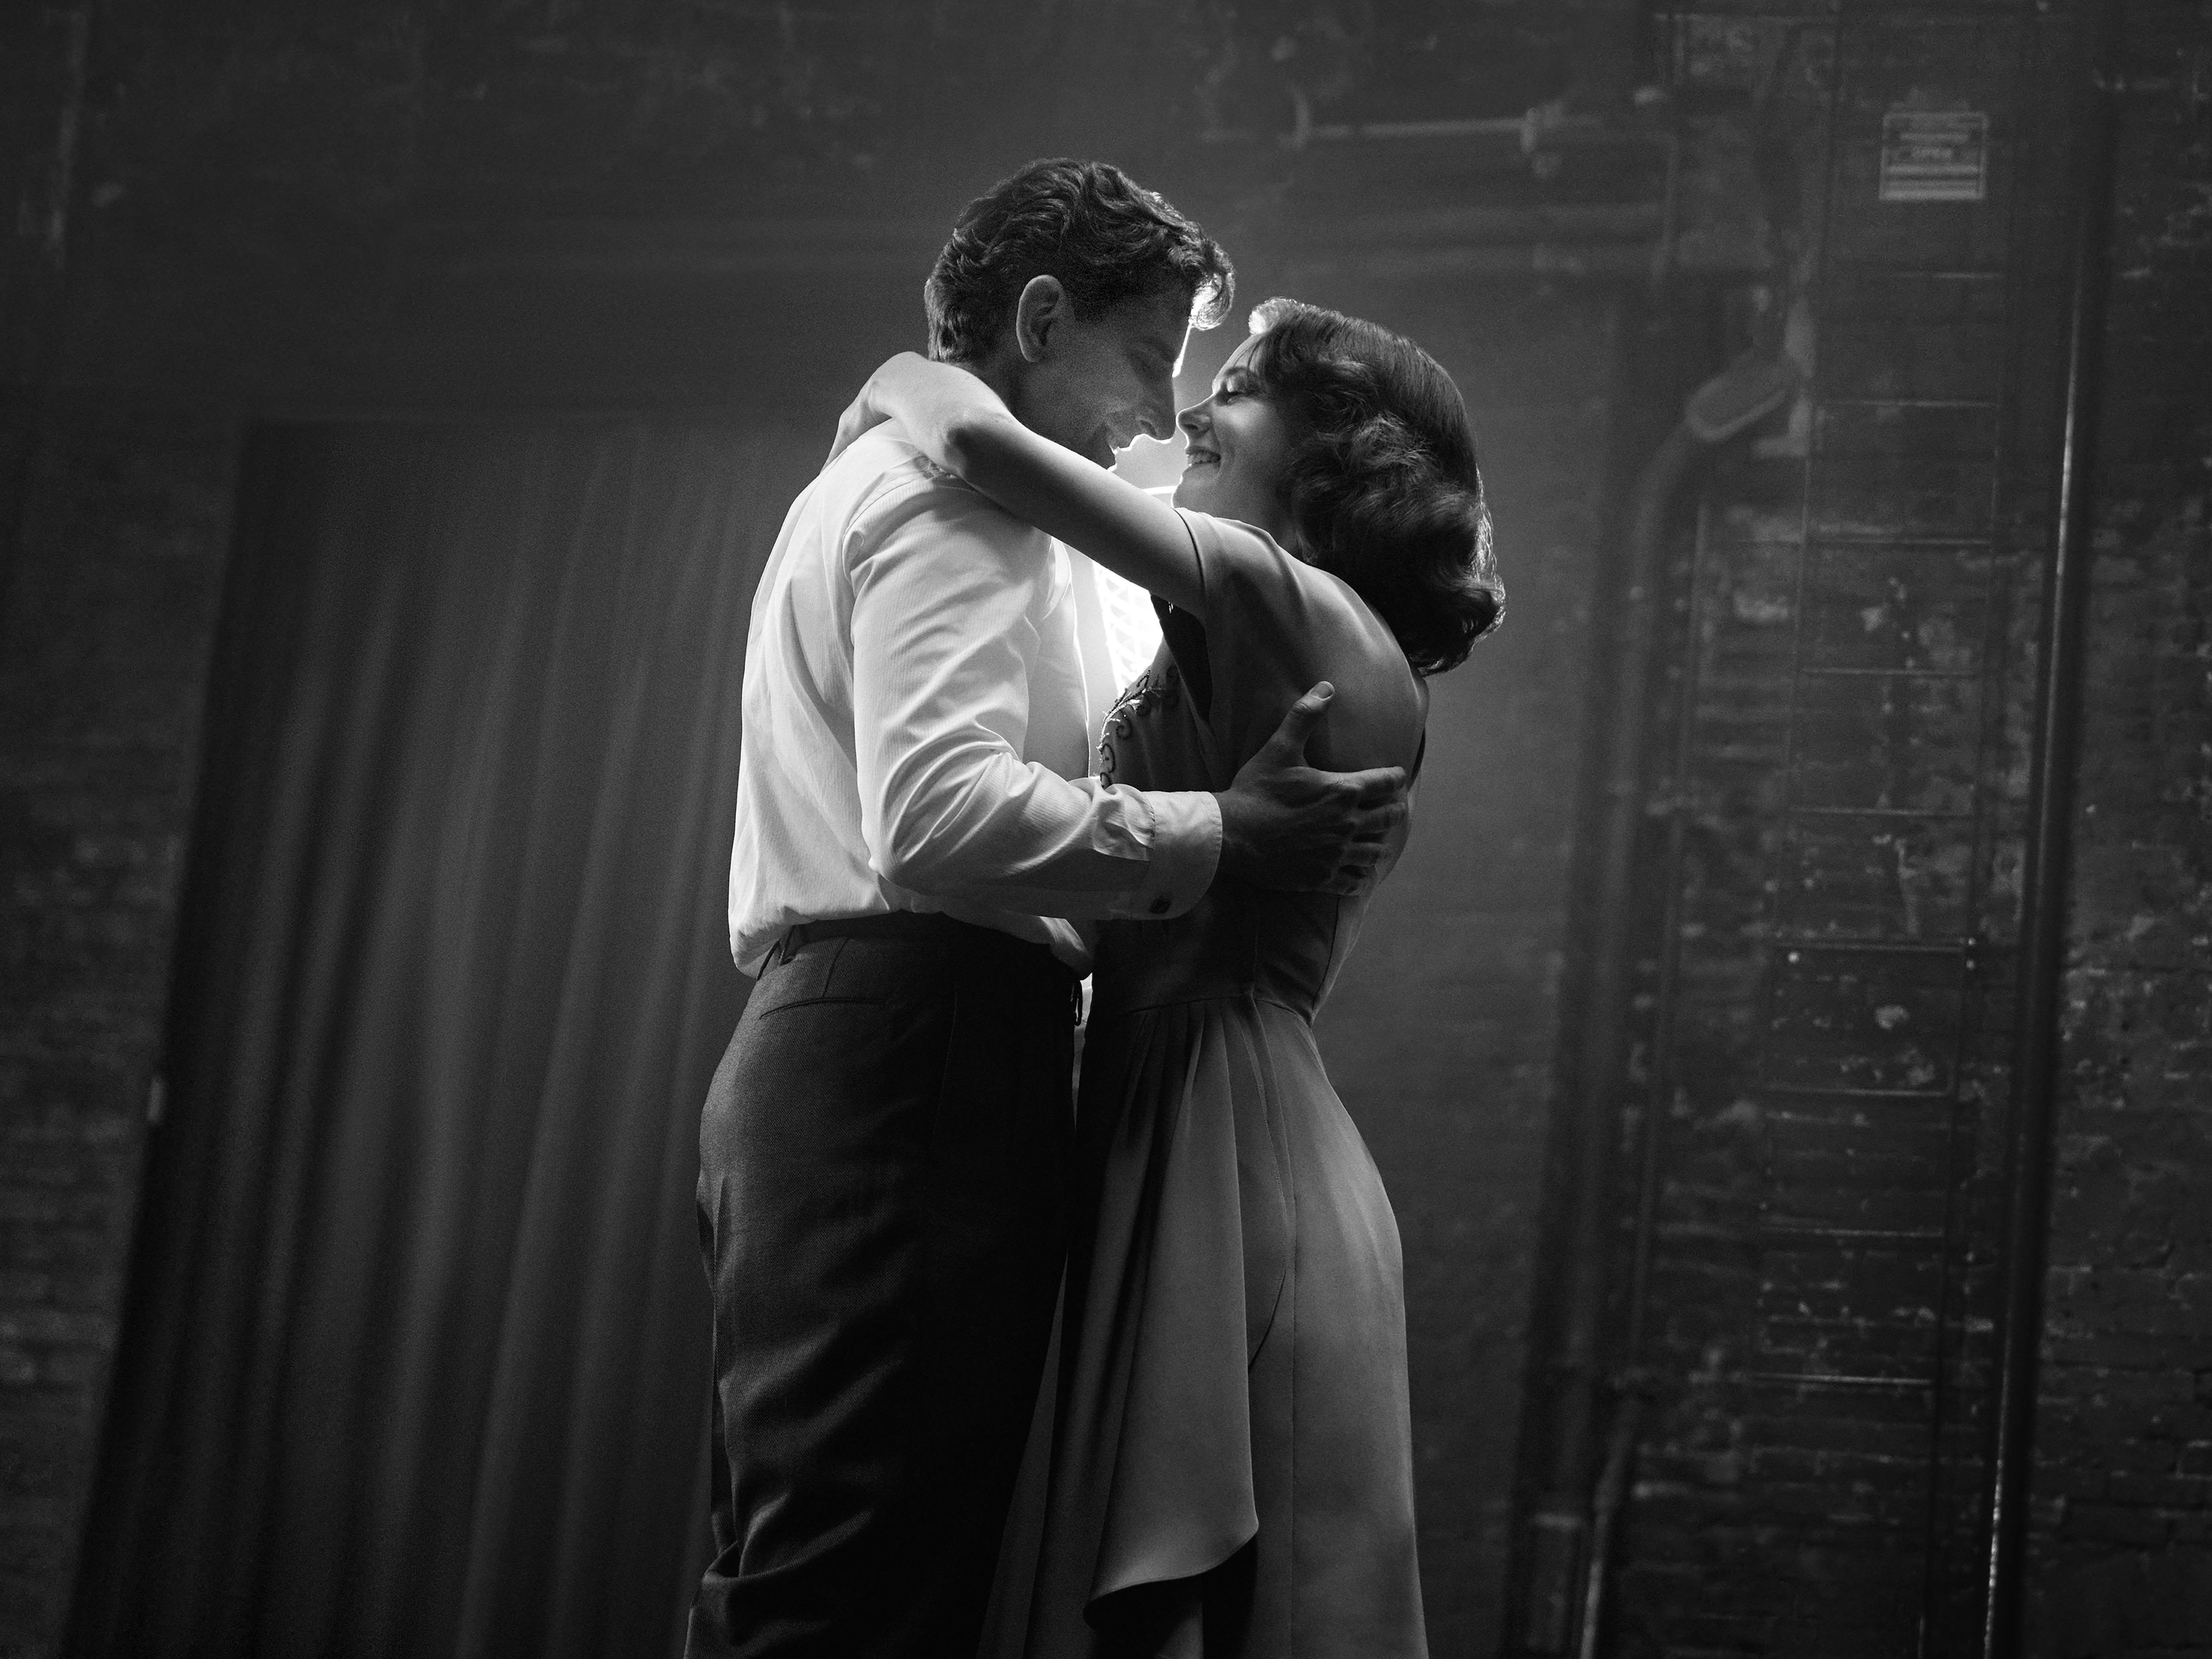 Leonard Bernstein (Bradley Cooper) and Felicia Montealegre Cohn Bernstein (Carey Mulligan) dance on a darkened stage. How romantic.